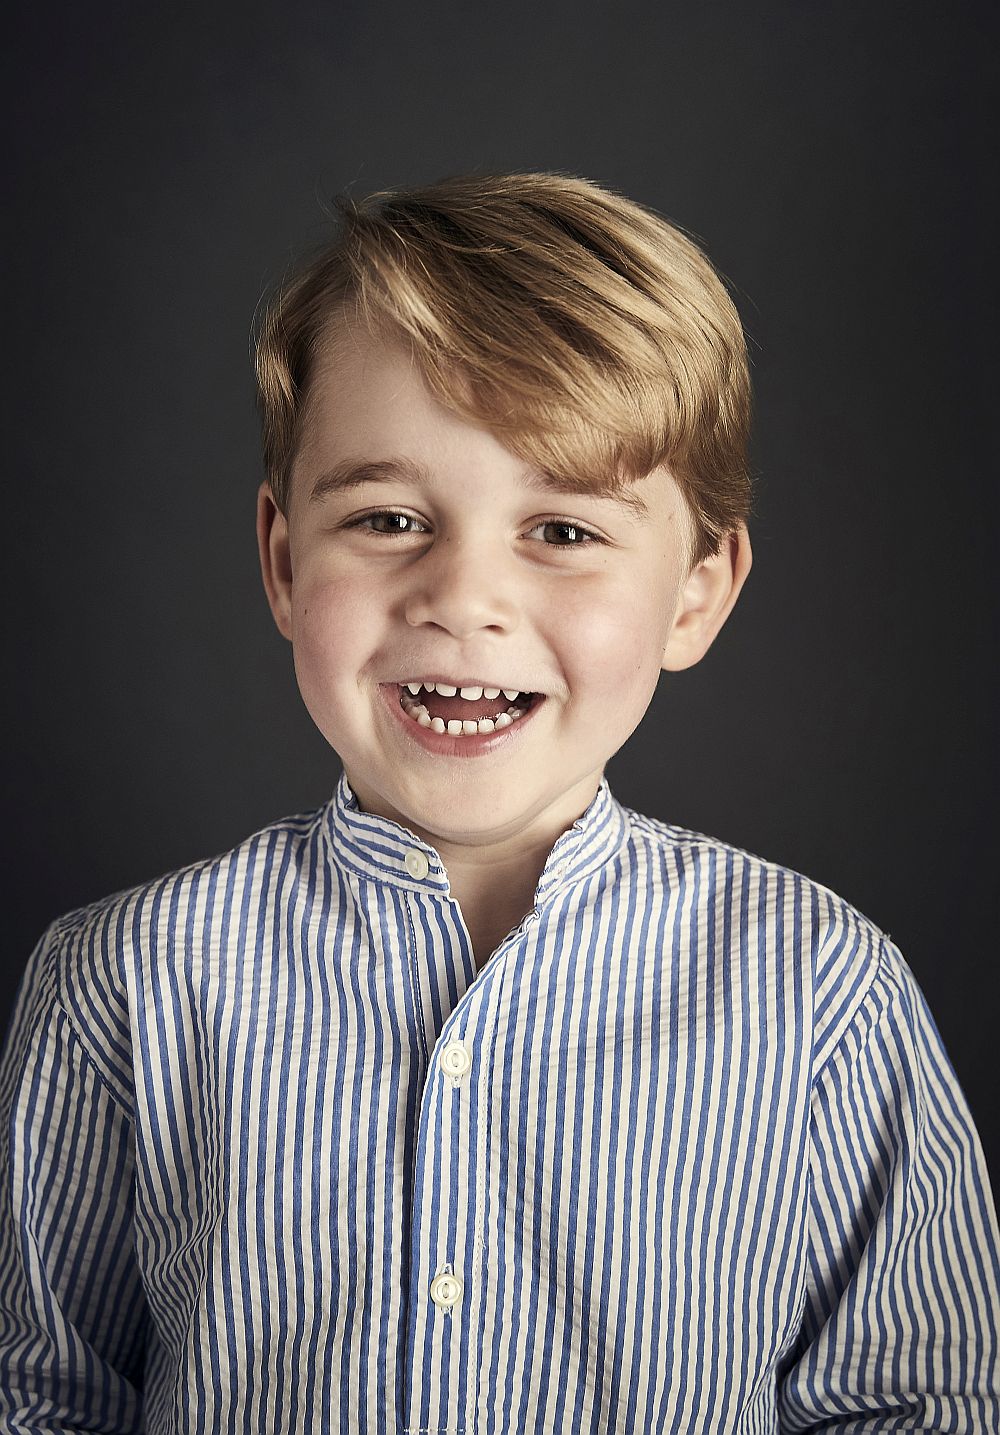 Принц Джордж навършва днес четири години. От двореца Кенсингтън пуснаха официален портрет за рождения му ден